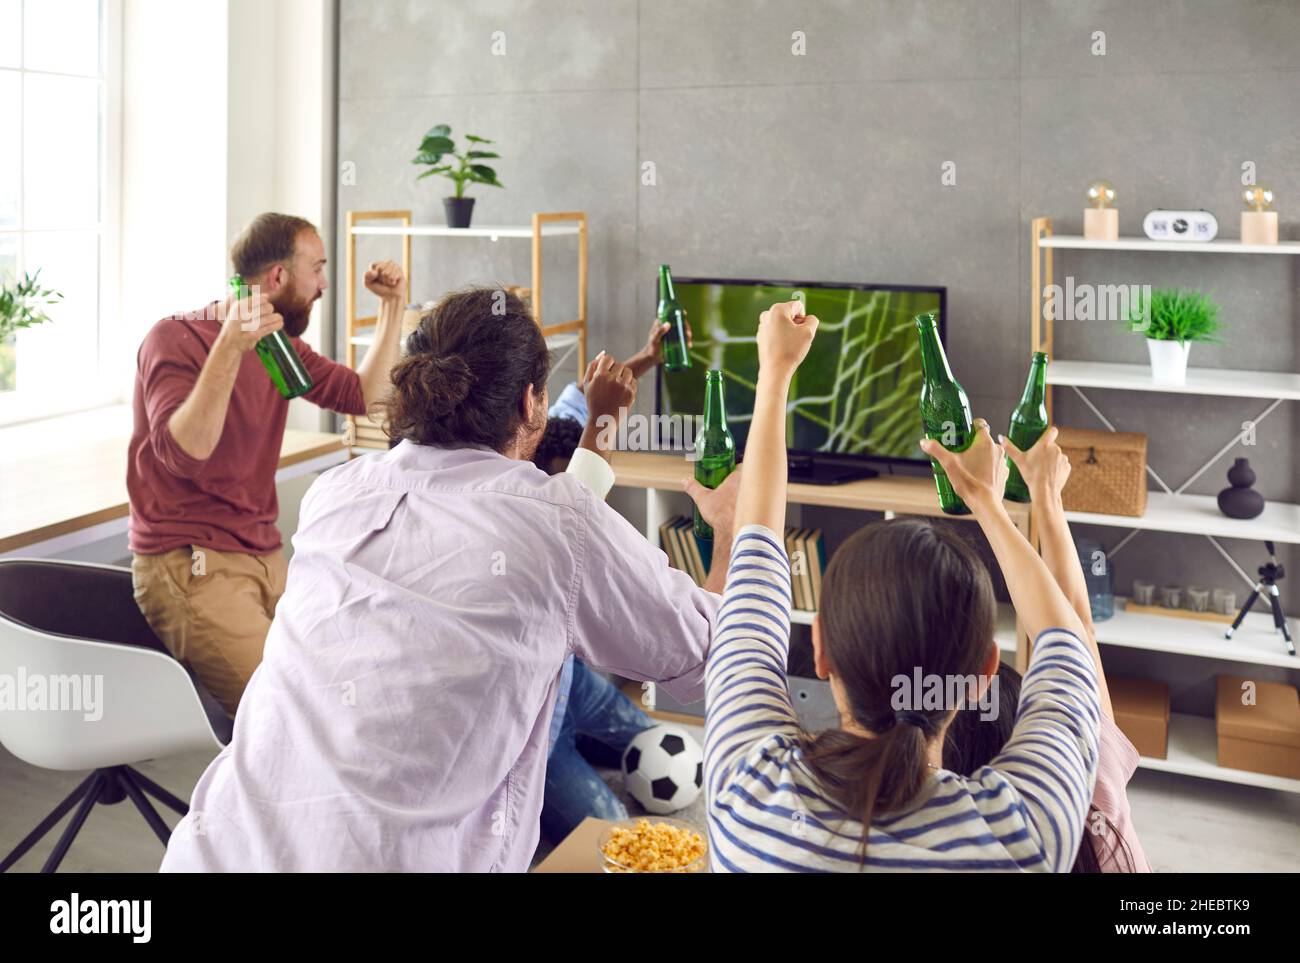 Un groupe d'amis adultes actifs regardent émotionnellement un match de football à la télévision à la maison. Banque D'Images